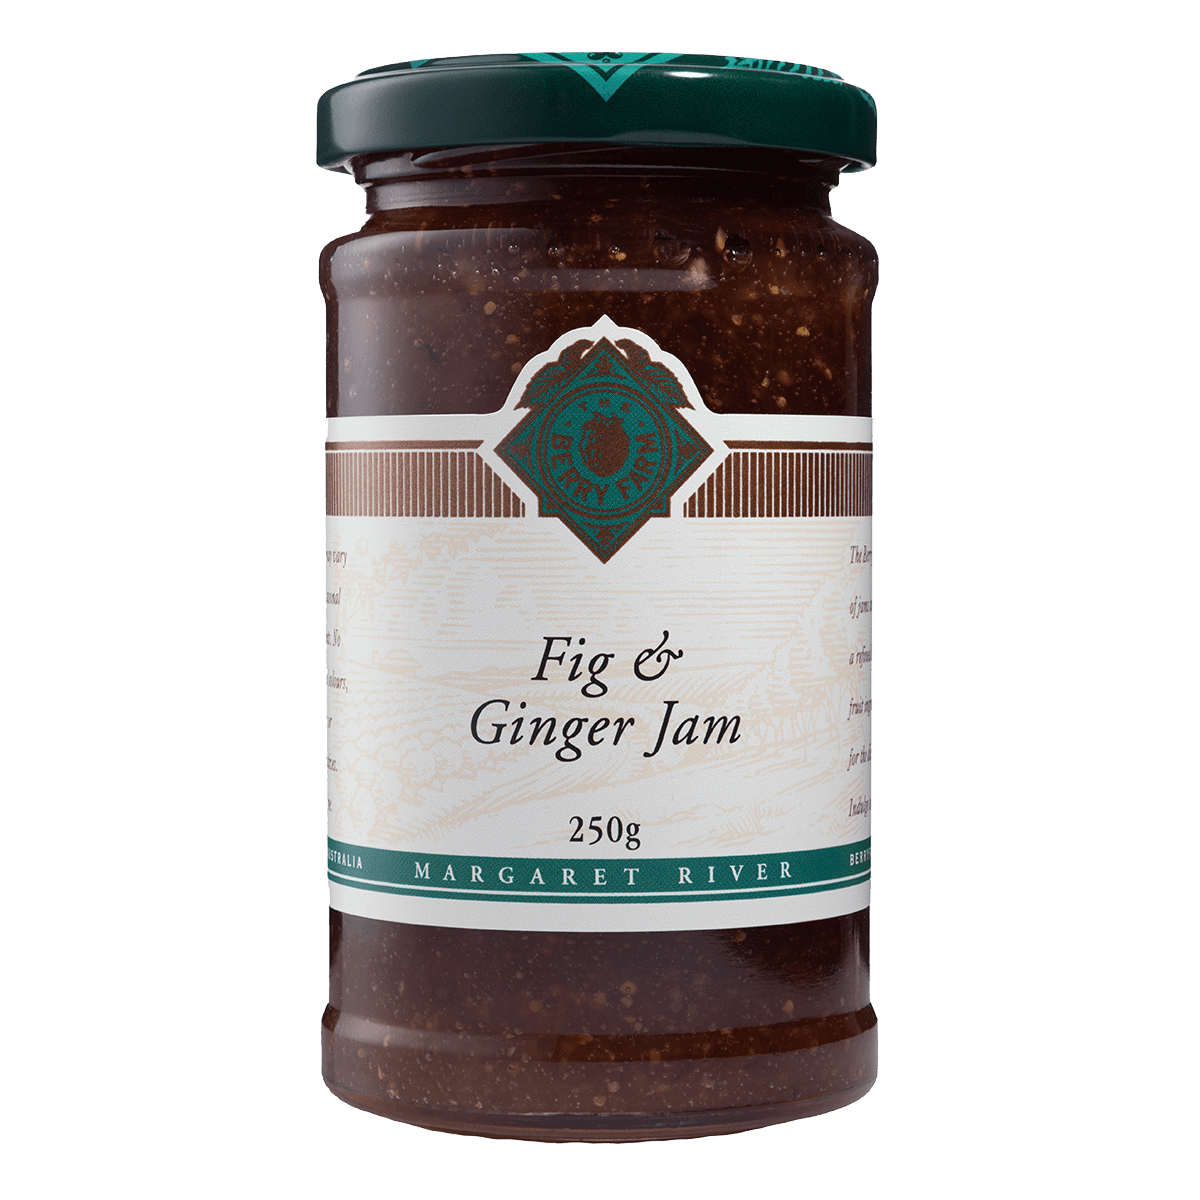 A jar of Fig & Ginger Jam